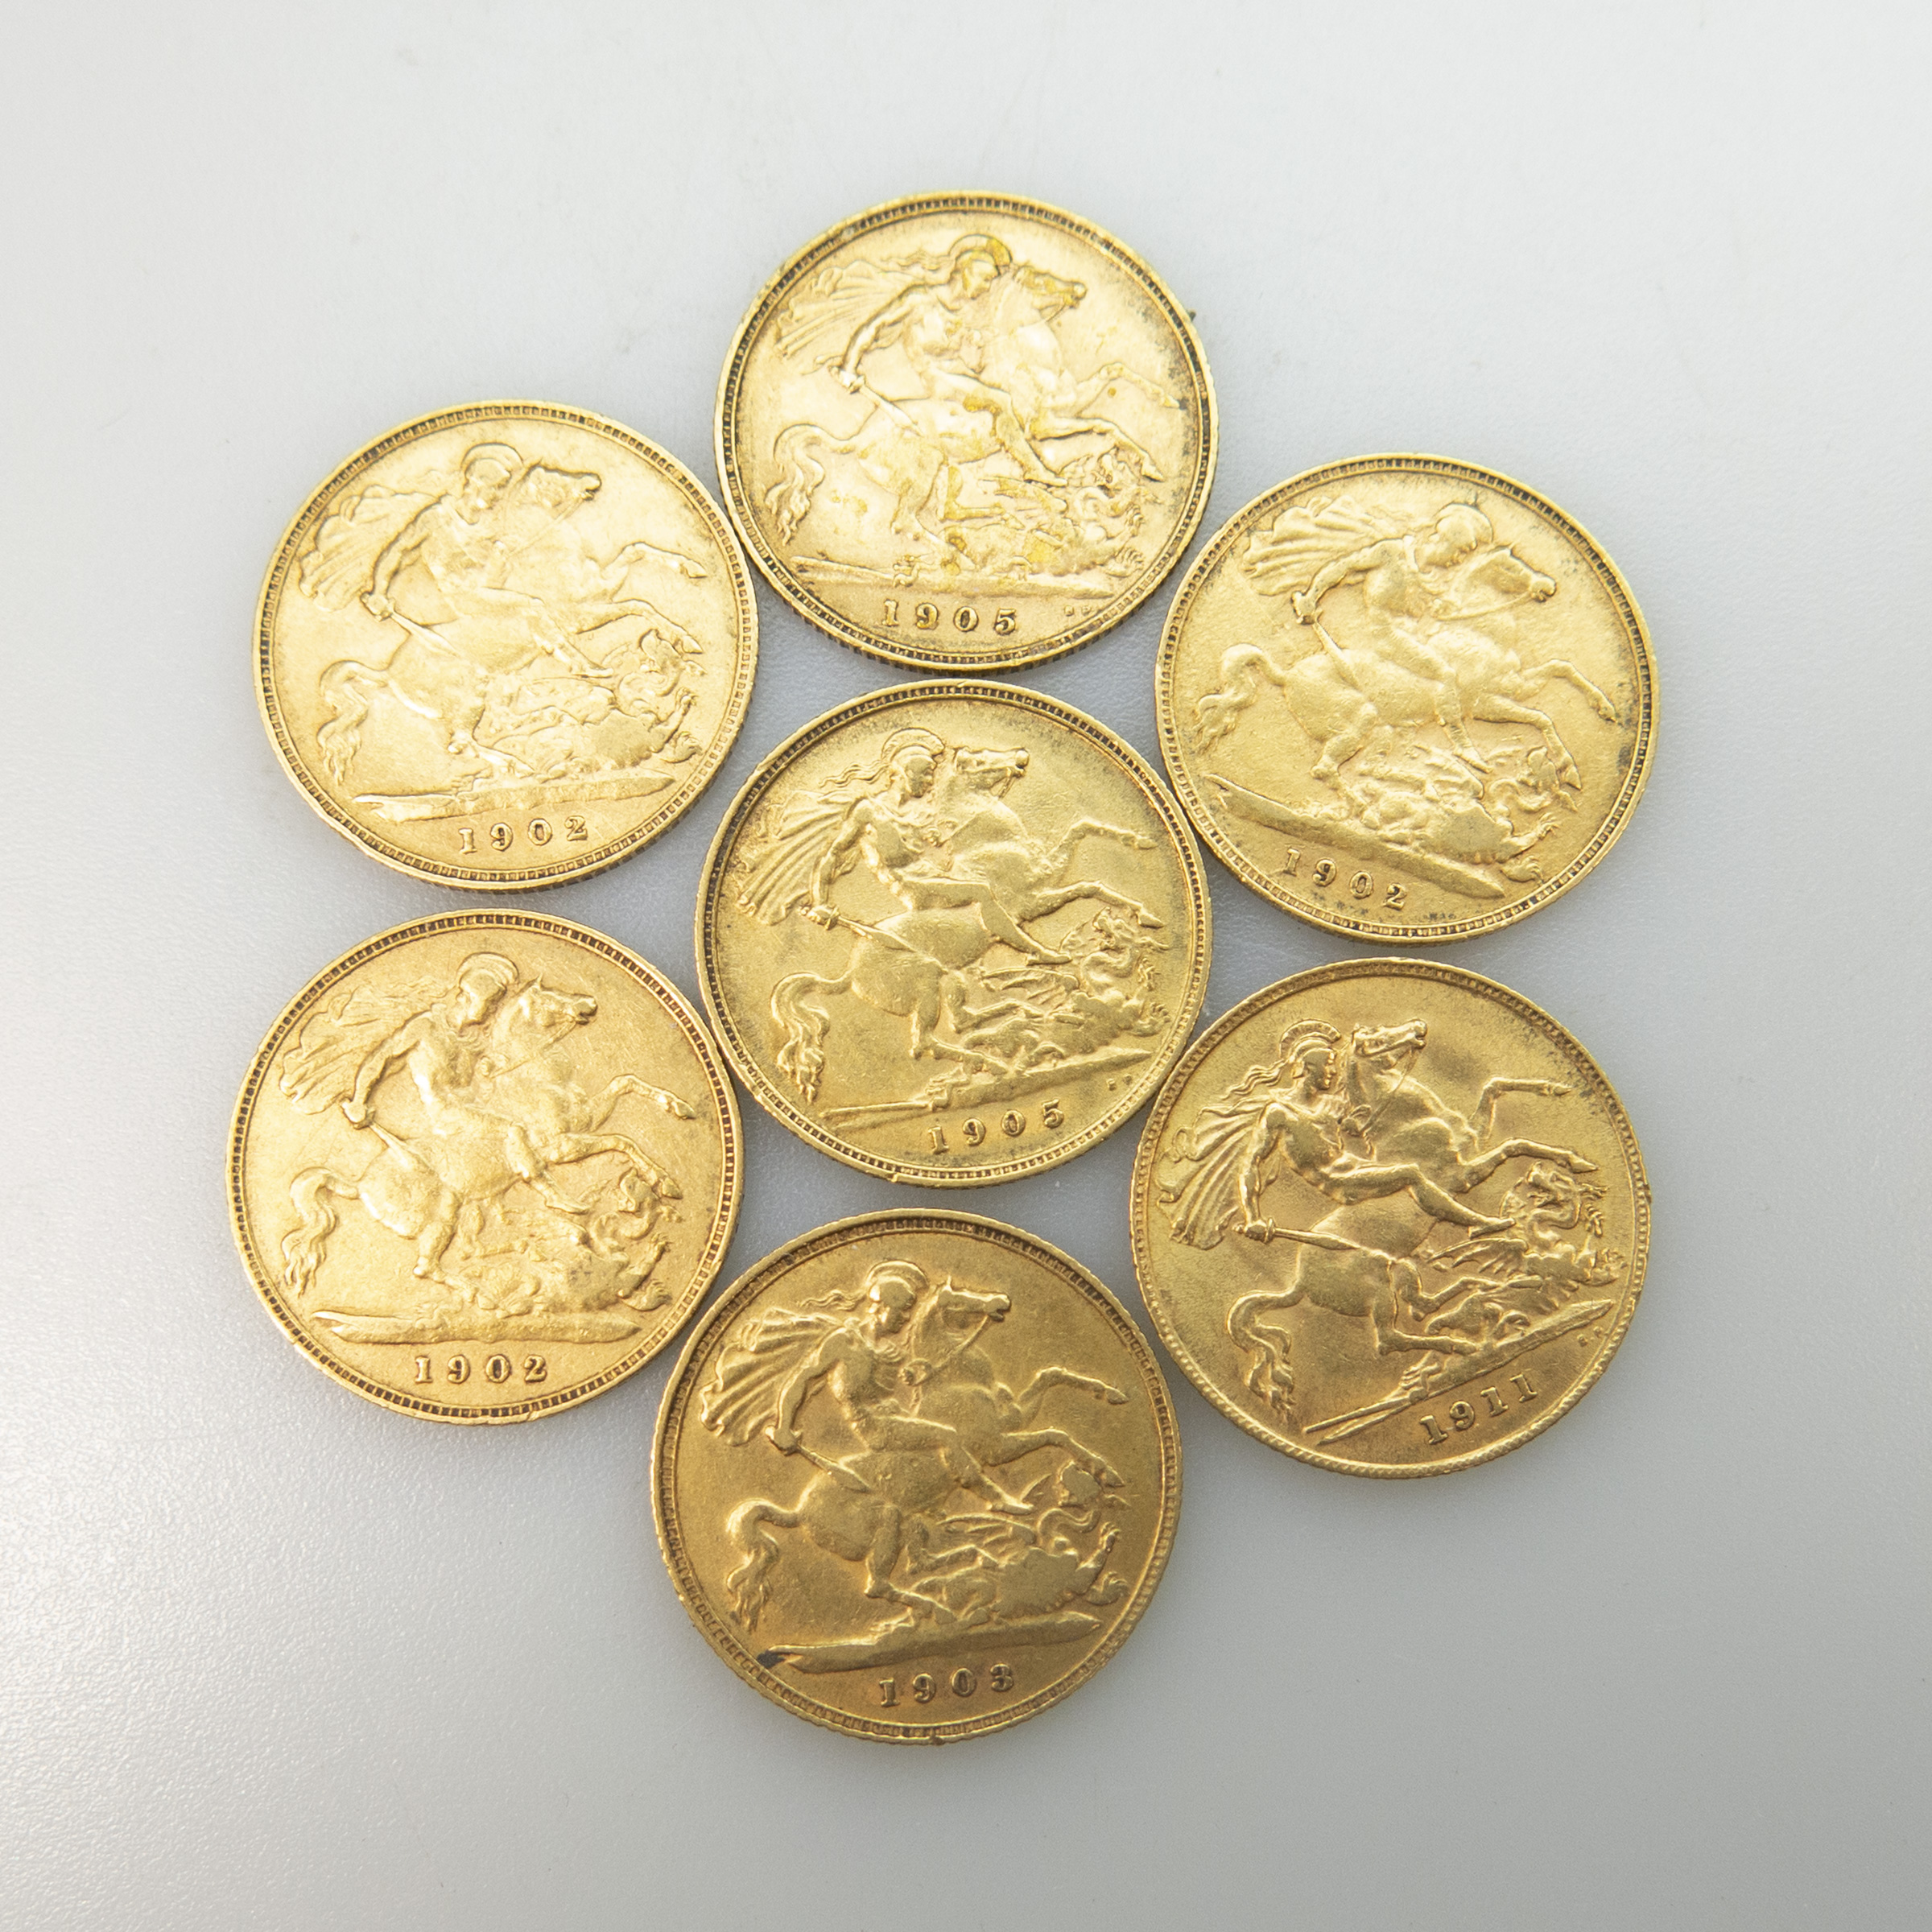 Seven British Gold Half Sovereigns